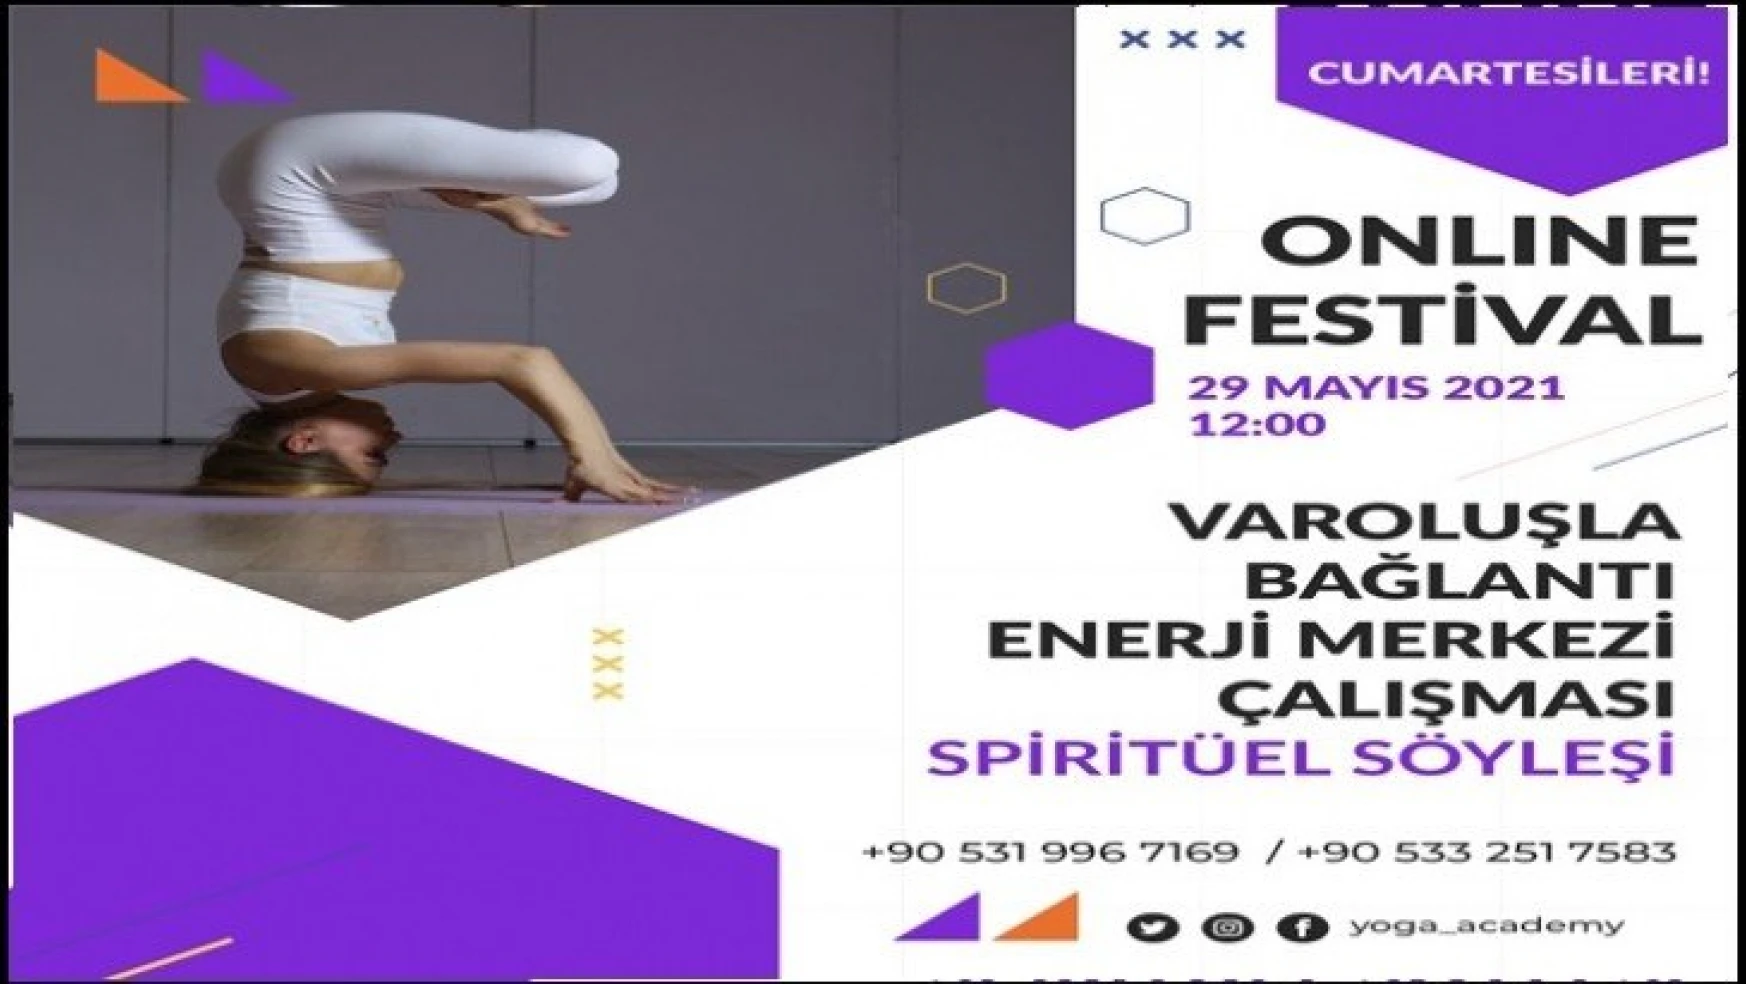 Covıd-19'a Karşı Bağışıklığı Güçlendiren Festival!